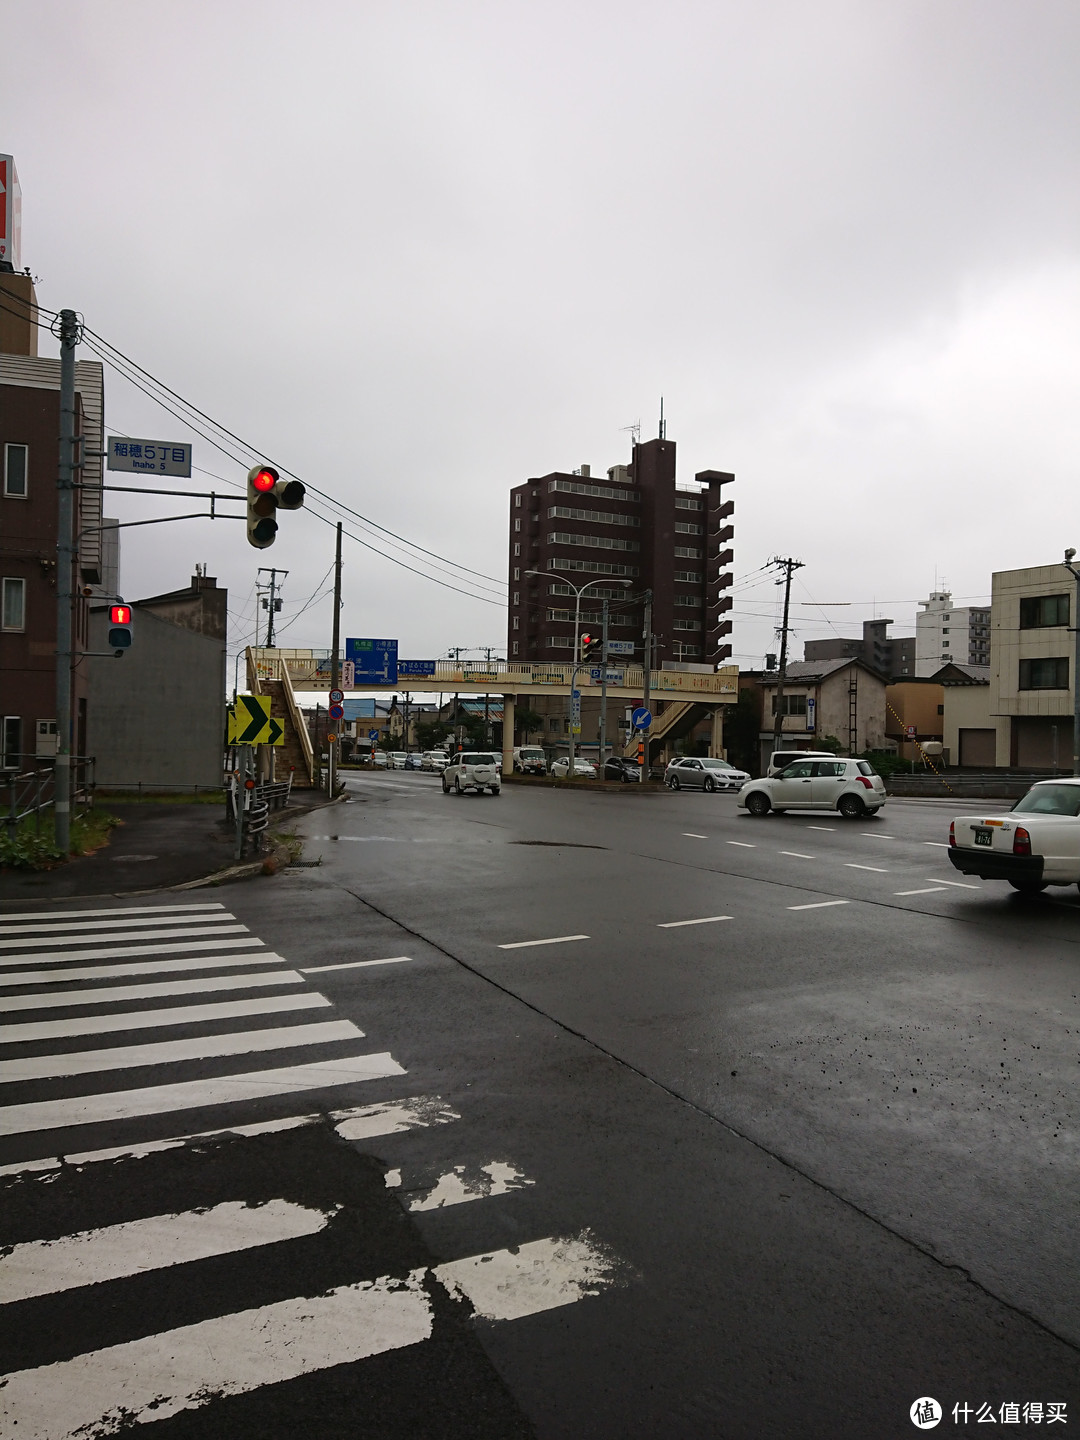 一路伴随着恼人的小雨进入小樽市区